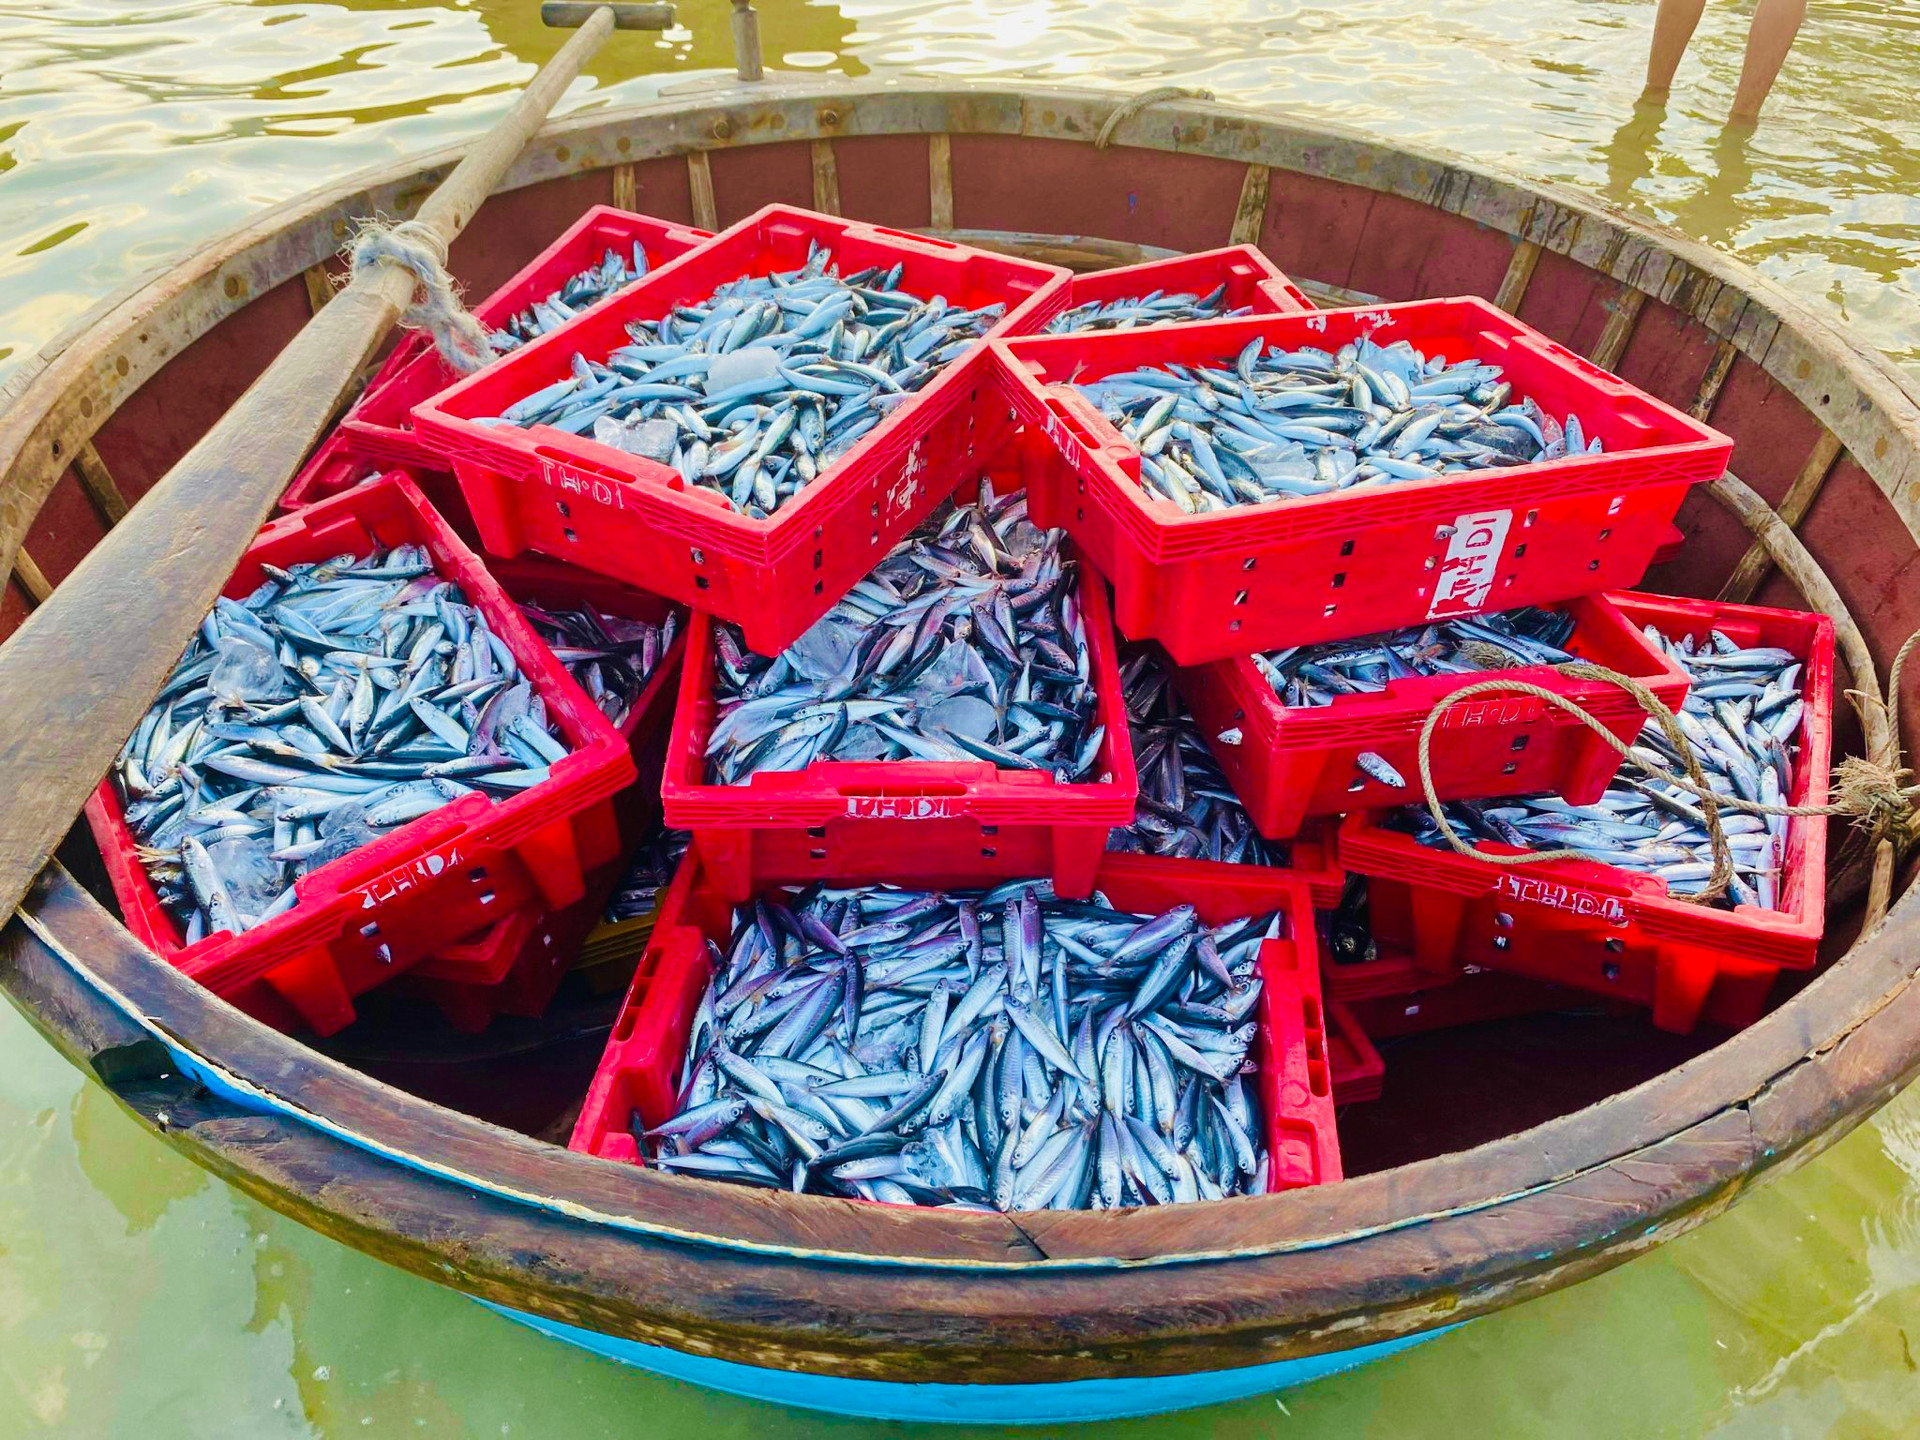 Ở Quảng Ngãi có cái chợ làng biển, hễ mặt trời ló rạng là tấp nập mua bán, cá cơm chất tươi đầy thuyền thúng- Ảnh 5.